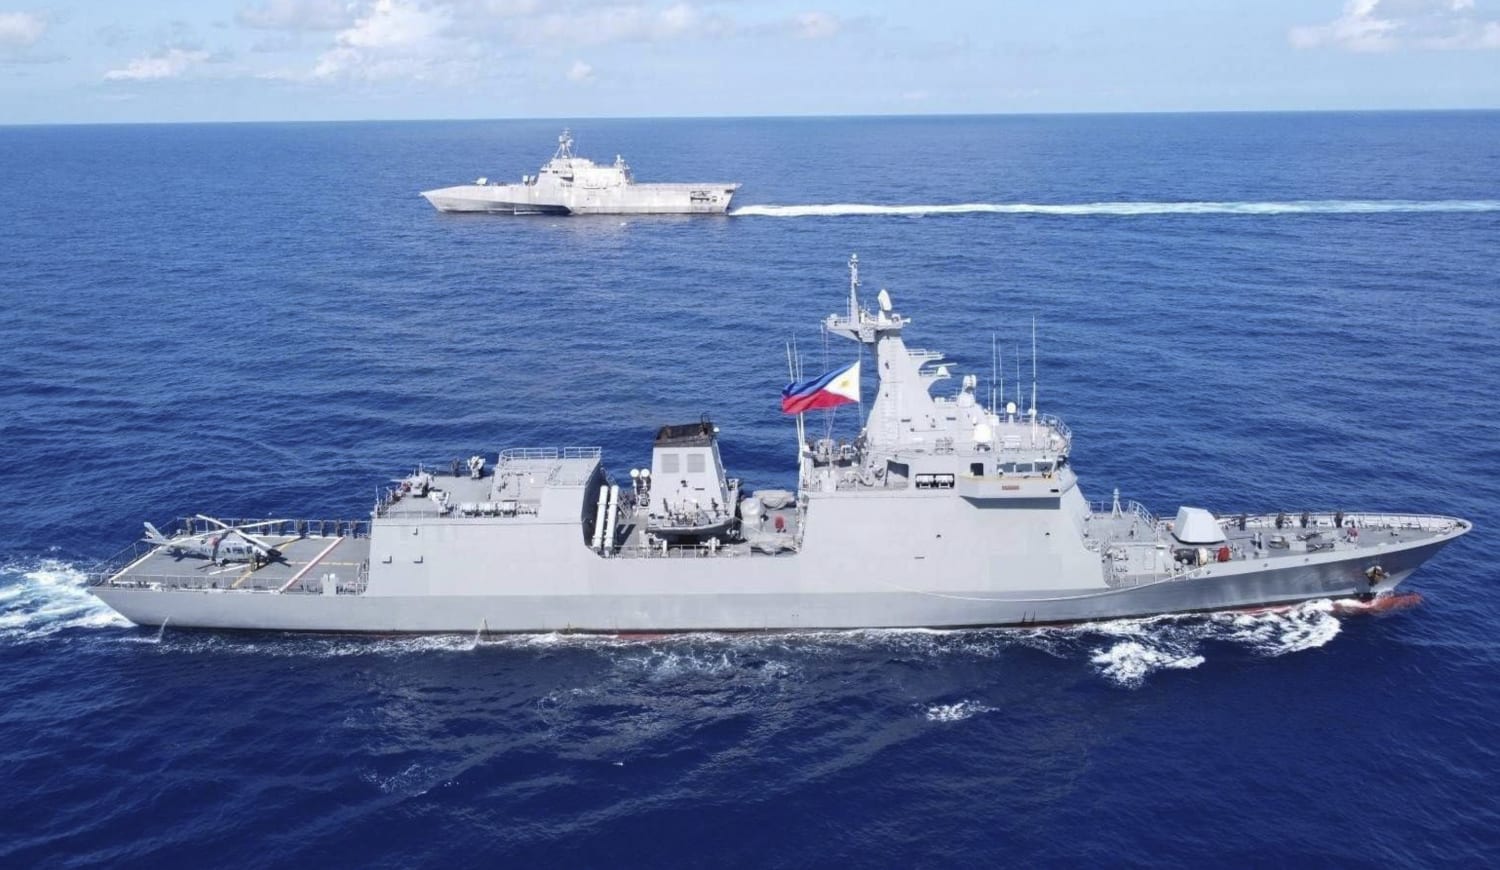 Čína tvrdí, že americká válečná loď nezákonně vstoupila do vod Jihočínského moře